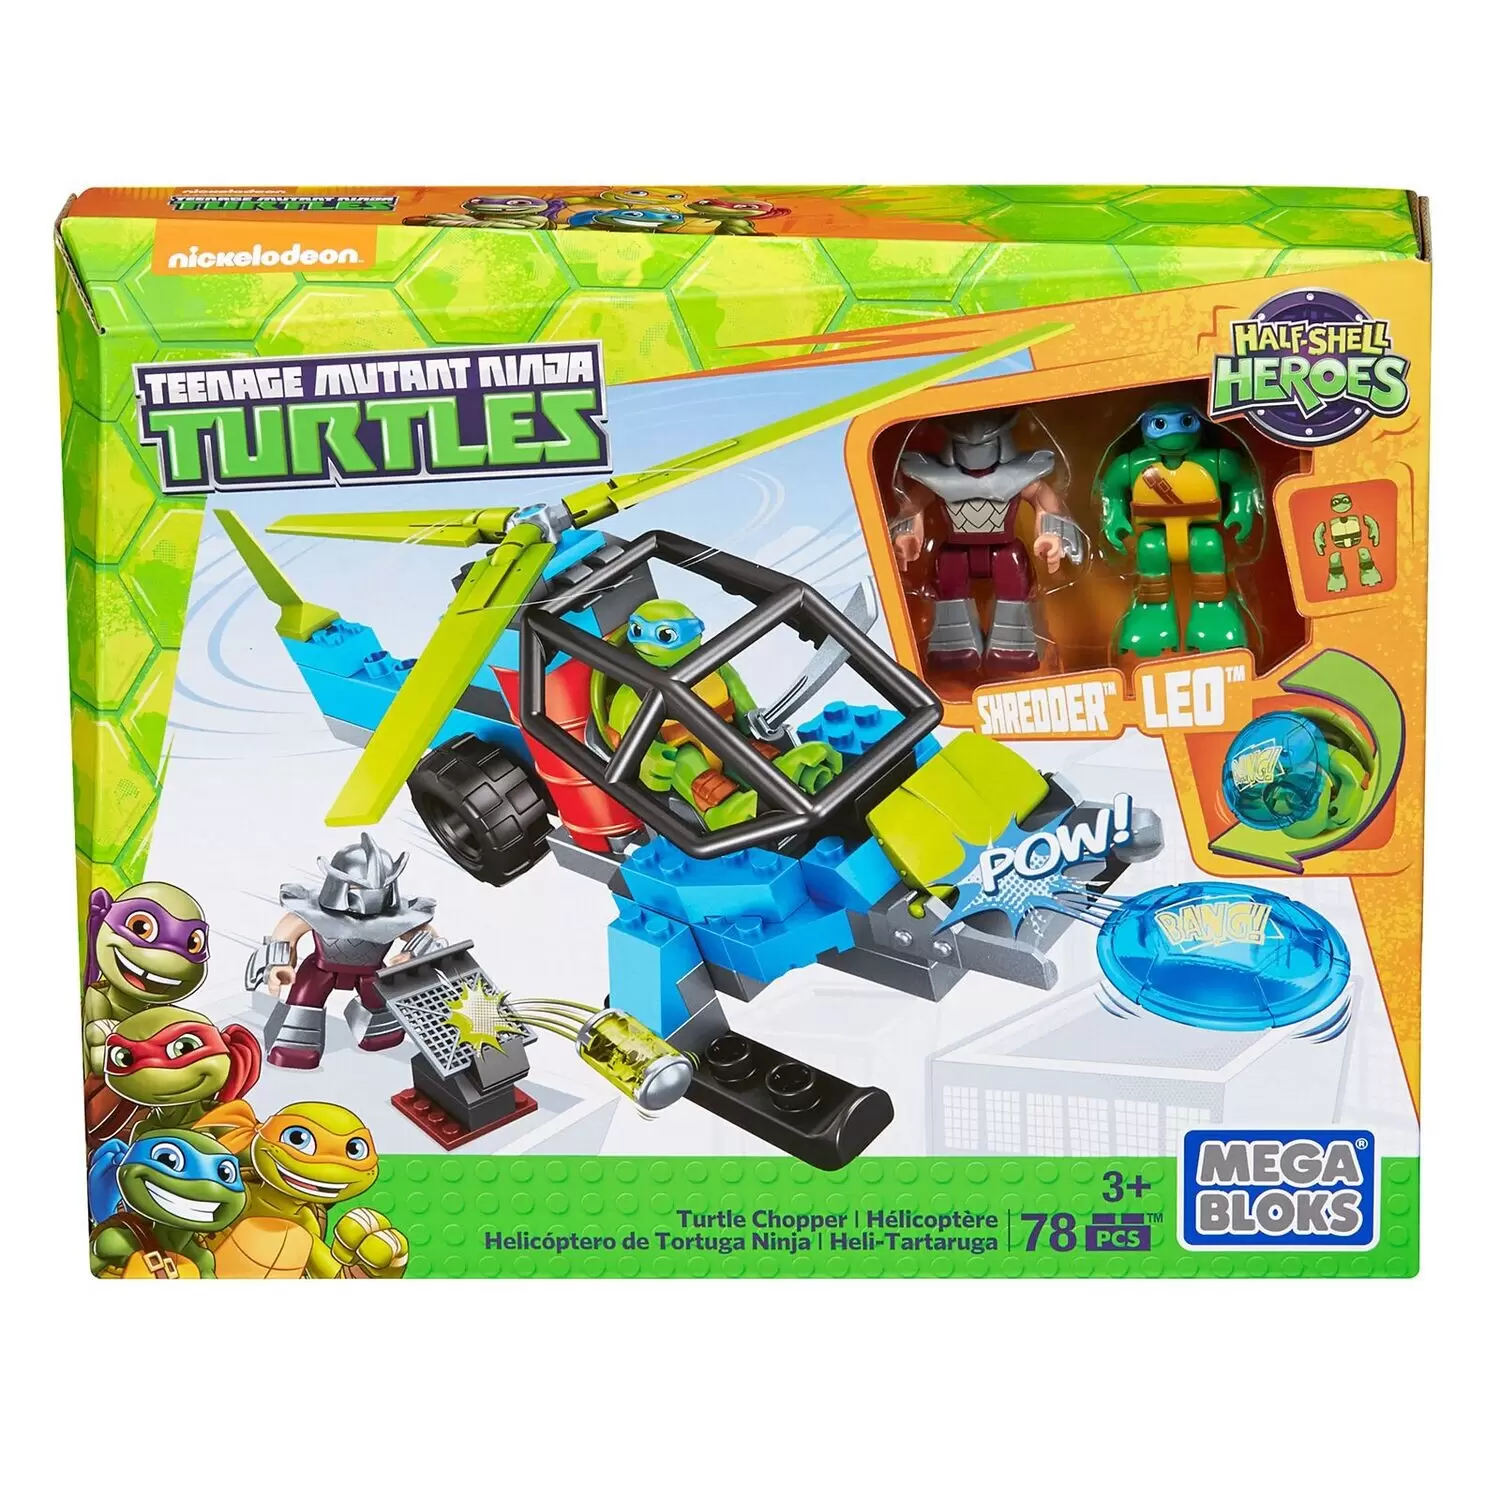 Teenage Mutant Ninja Turtles Mega Bloks - Turtle Chopper